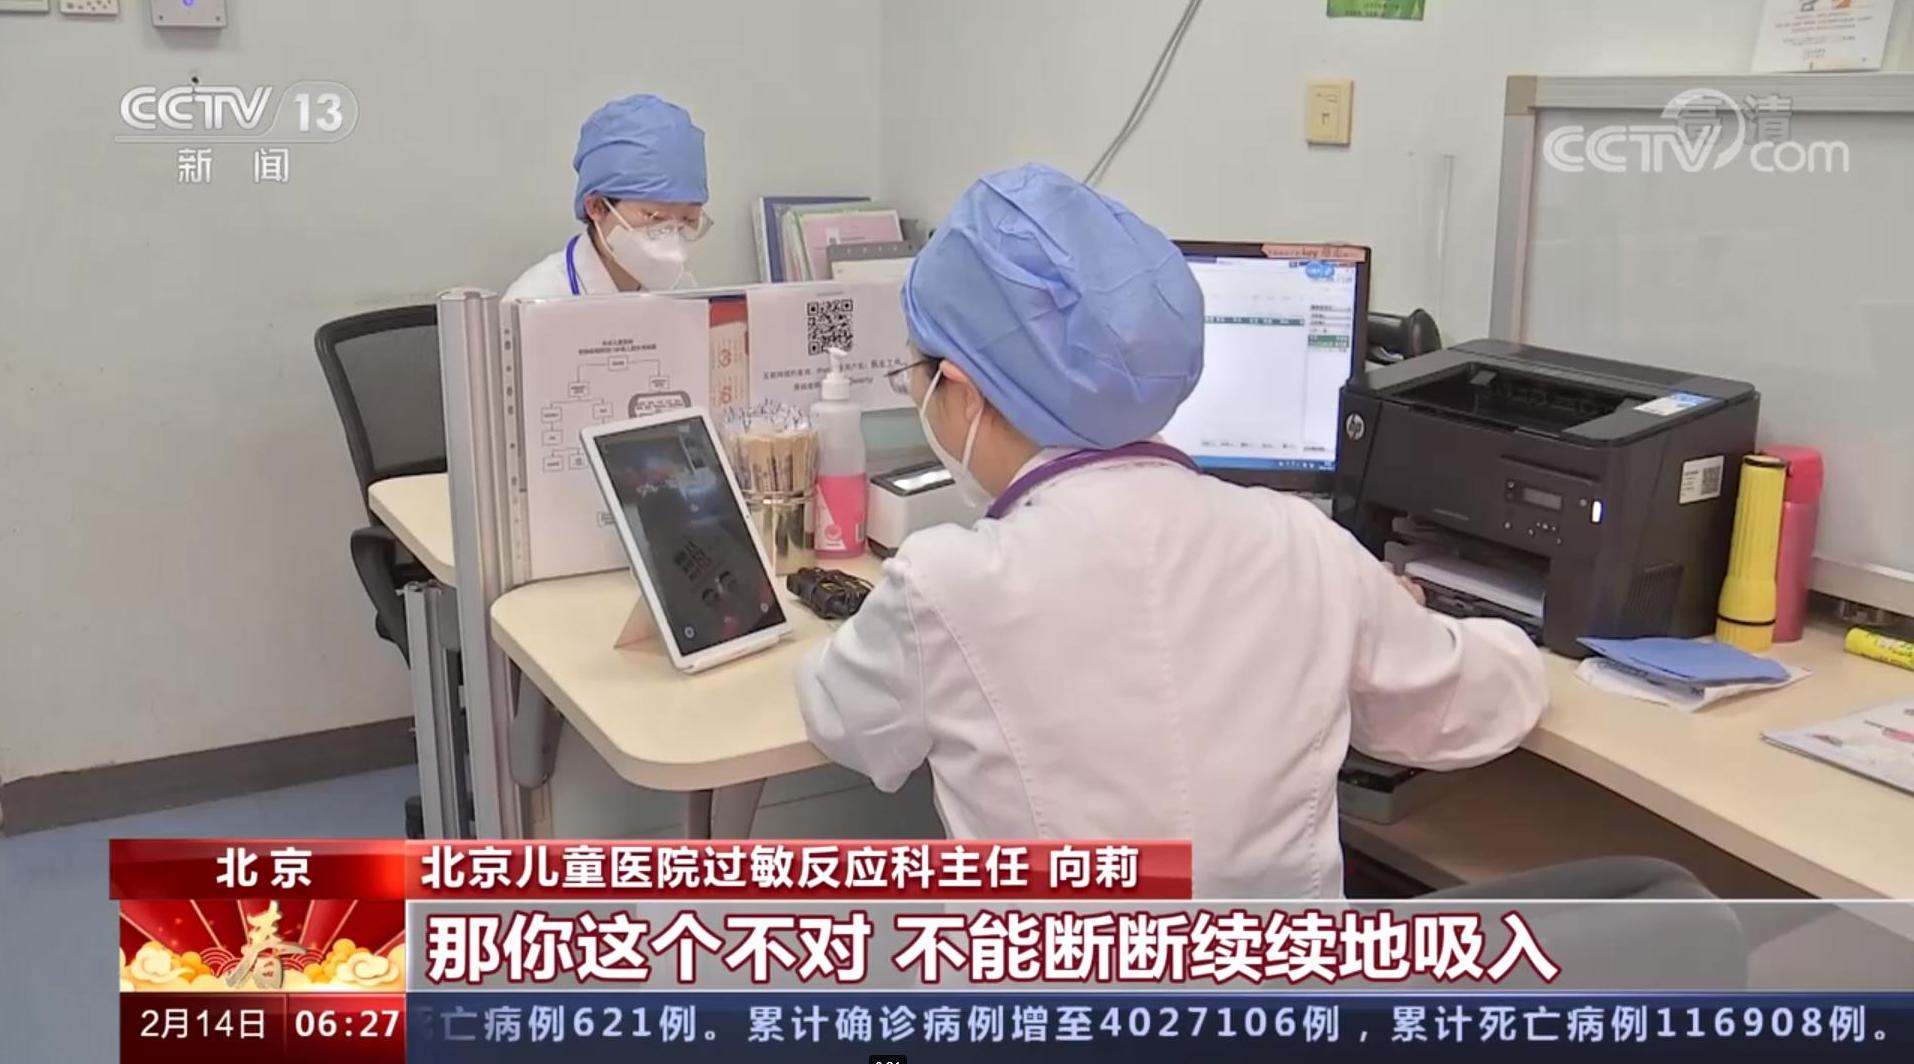 手机复诊、开药、配送到家……北京互联网诊疗便利外地患者